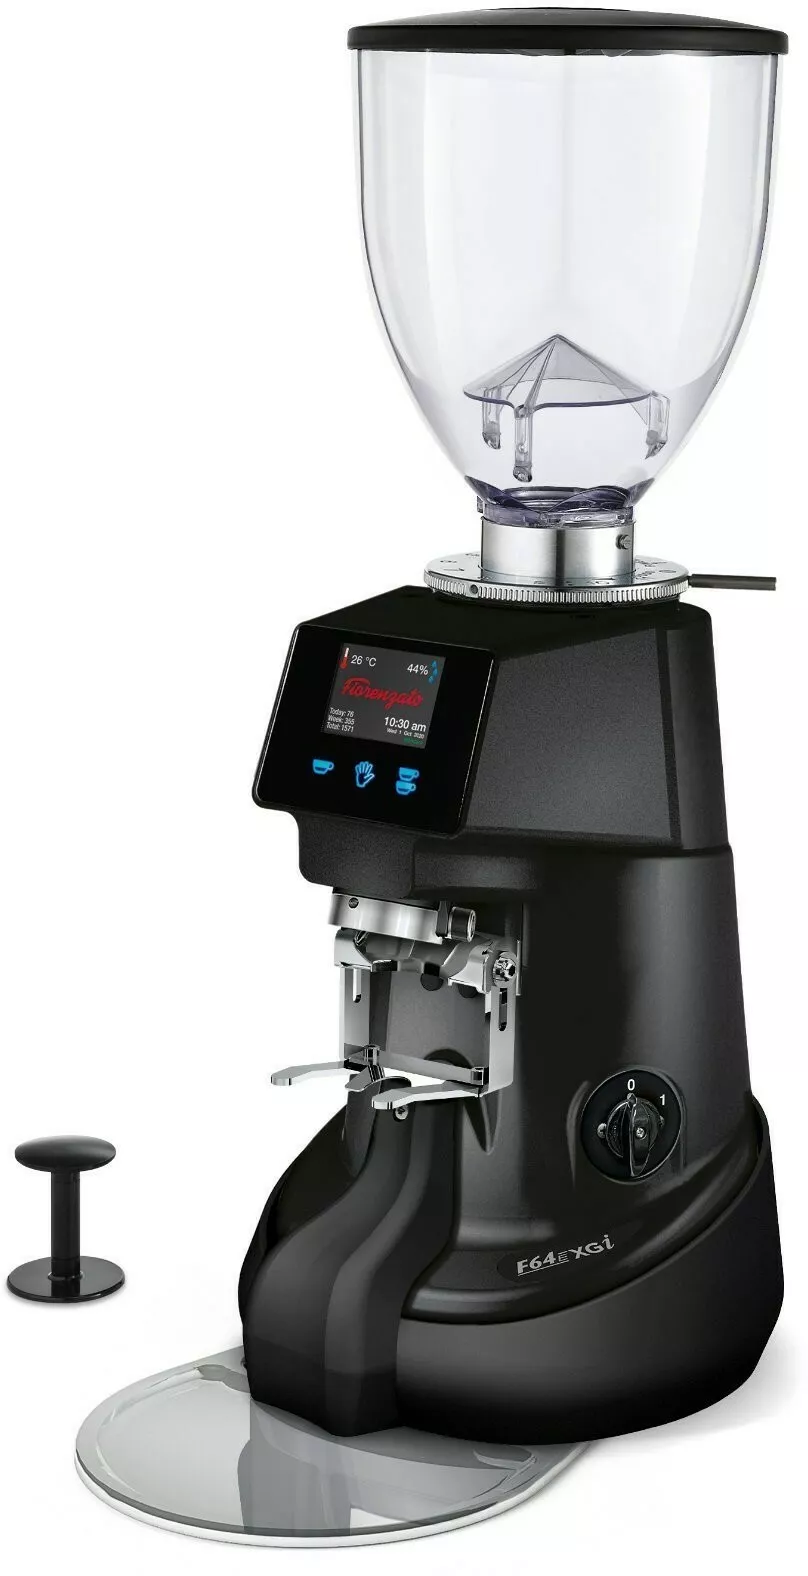 mlynek do kawy fiorenzato f64 evo xgi czarny prawy bok widok na mlynek z pojemnikiem na kawe